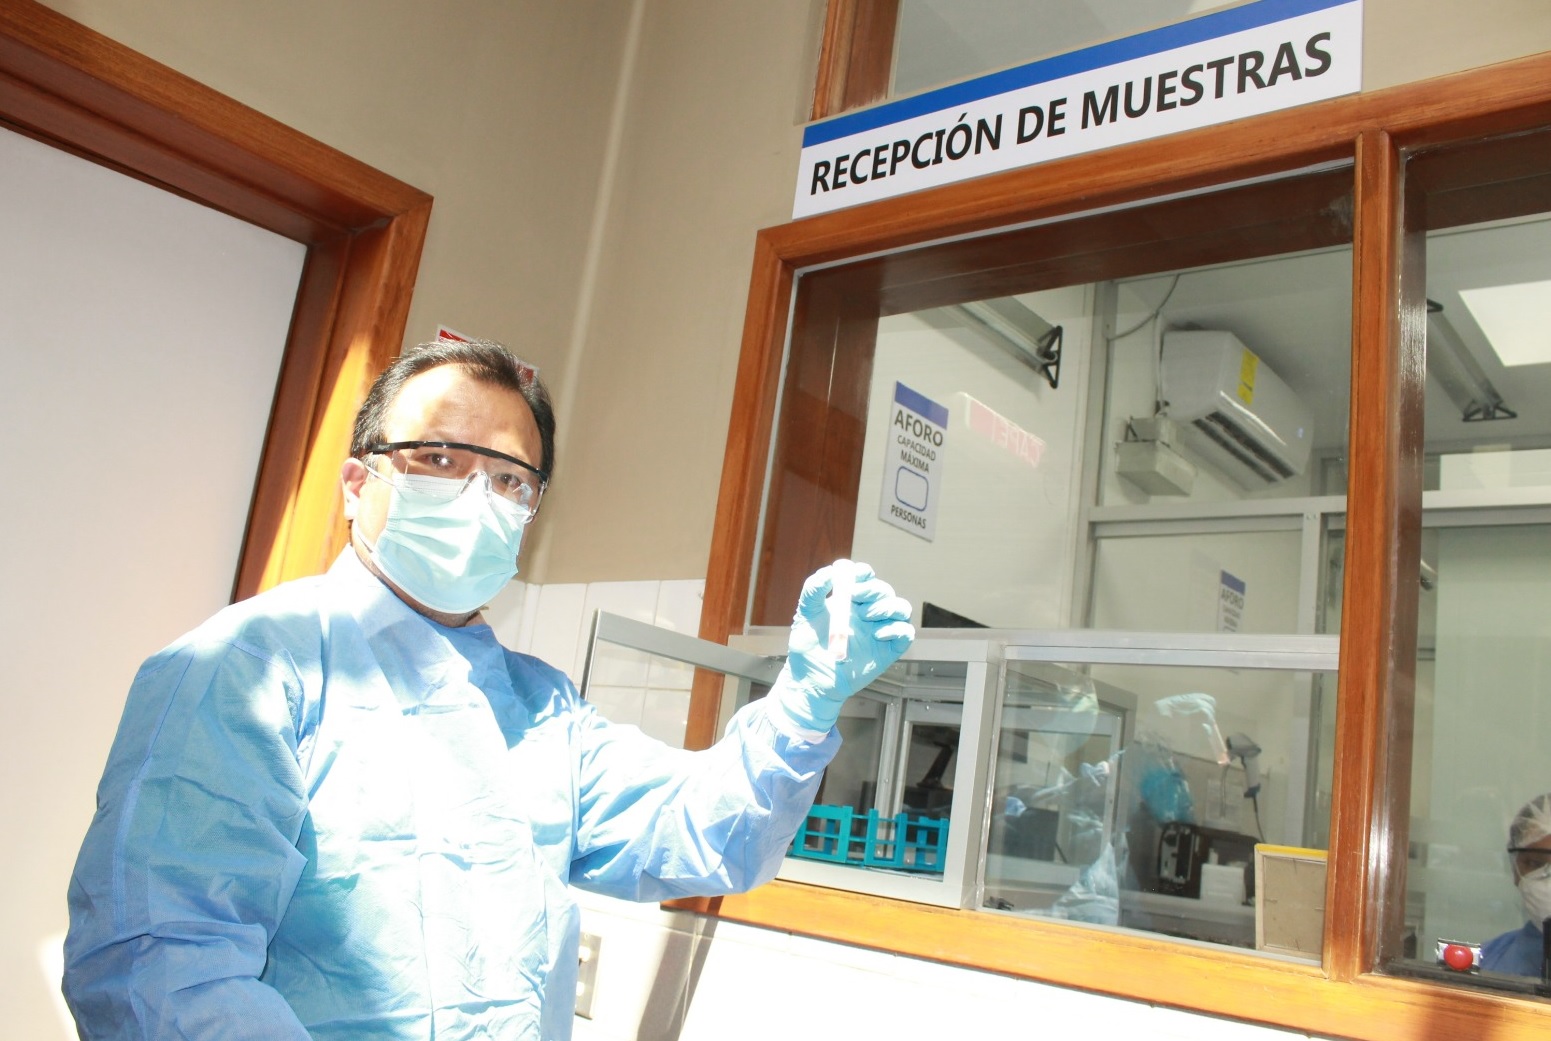 Essalud - Laboratorio Molecular de EsSalud Cusco procesó más de 8 mil pruebas para diagnóstico del COVID-19 y otras enfermedades